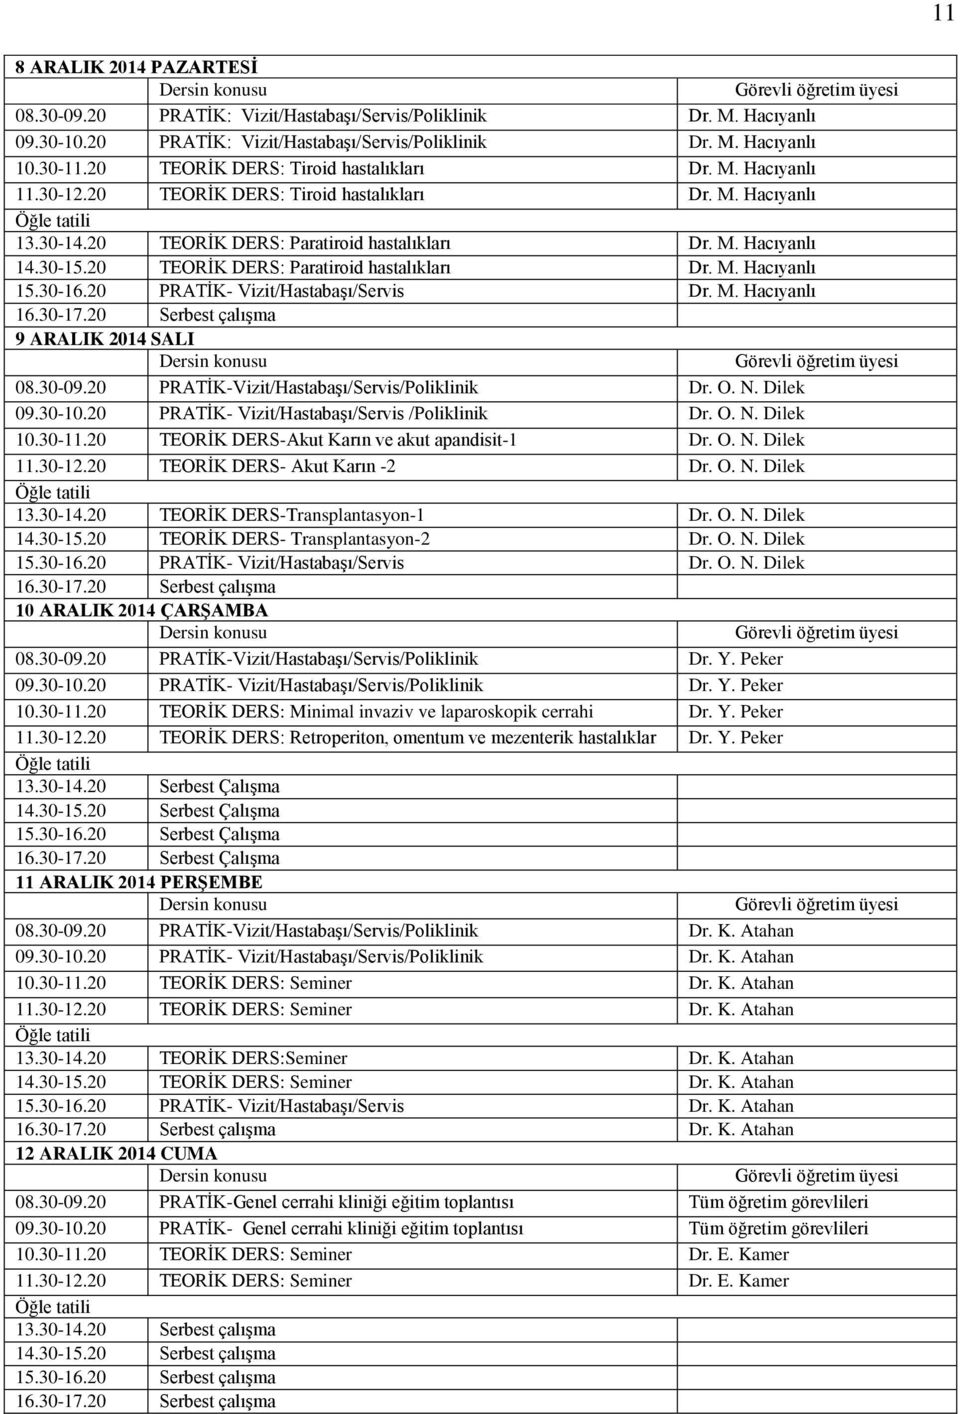 20 TEORİK DERS: Paratiroid hastalıkları Dr. M. Hacıyanlı 15.30-16.20 PRATİK- Vizit/Hastabaşı/Servis Dr. M. Hacıyanlı 16.30-17.20 Serbest çalışma 9 ARALIK 2014 SALI 10.30-11.